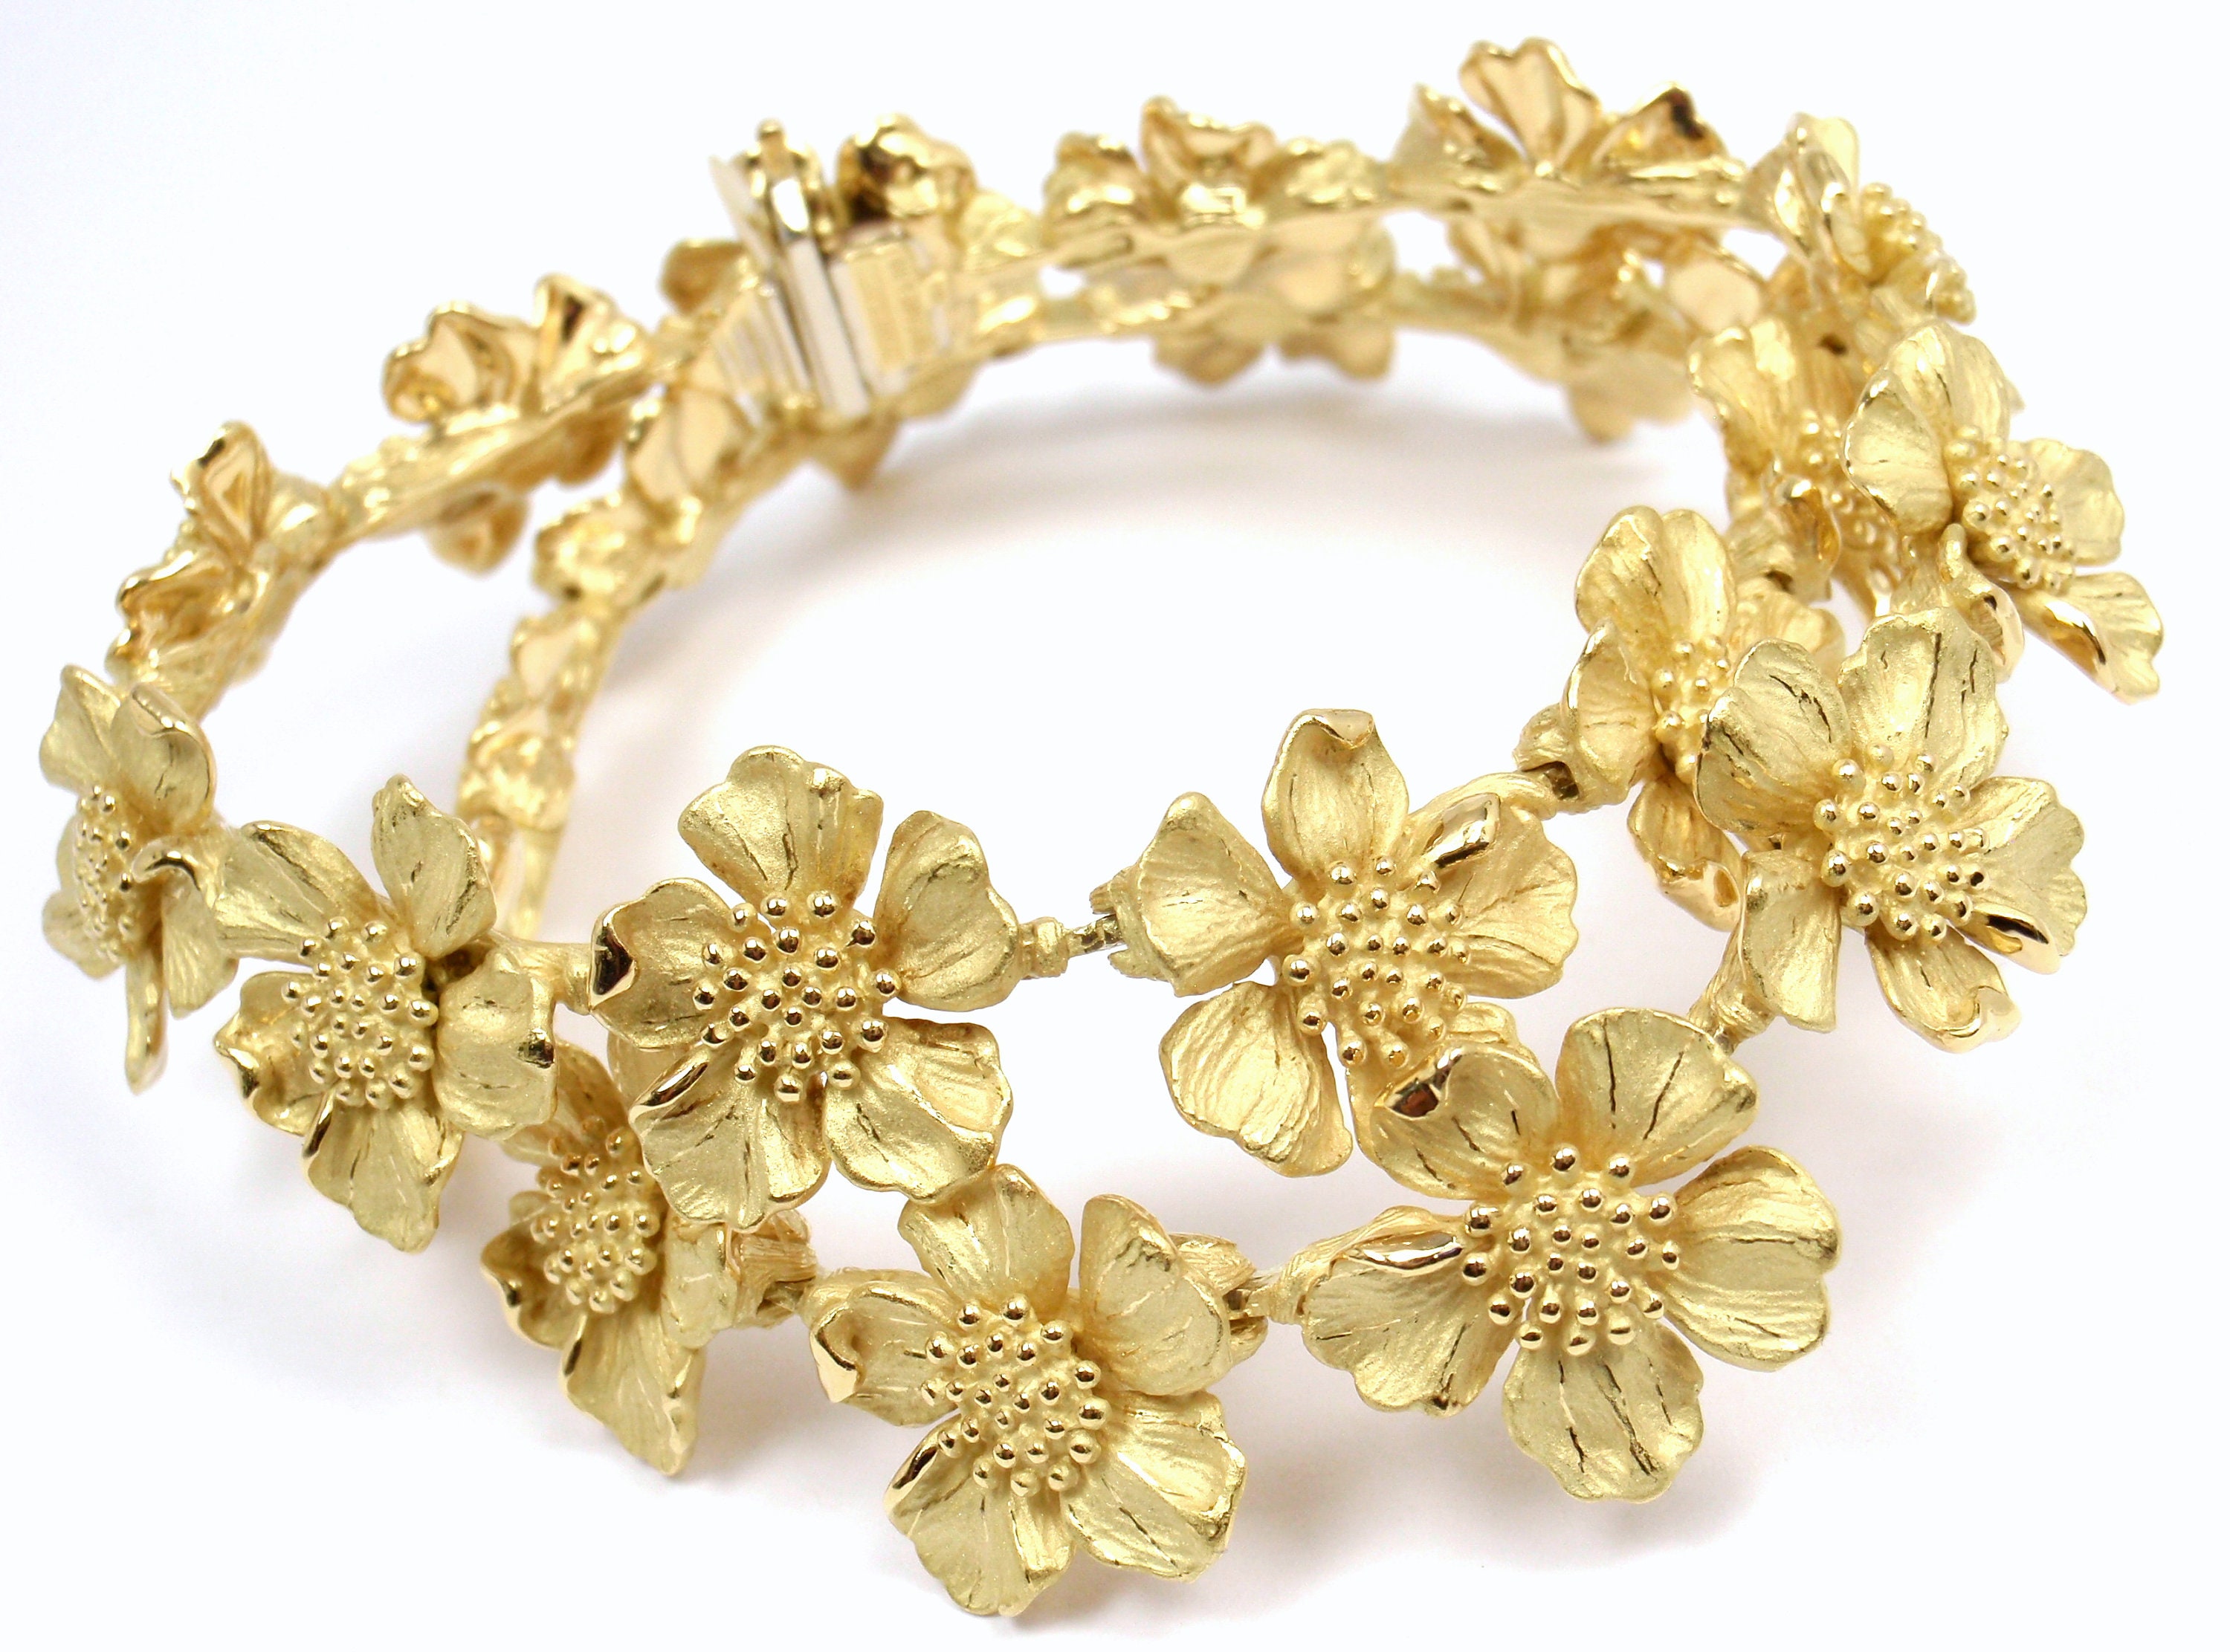 Tiffany gold charm bracelet from the 1940s - Tiffany